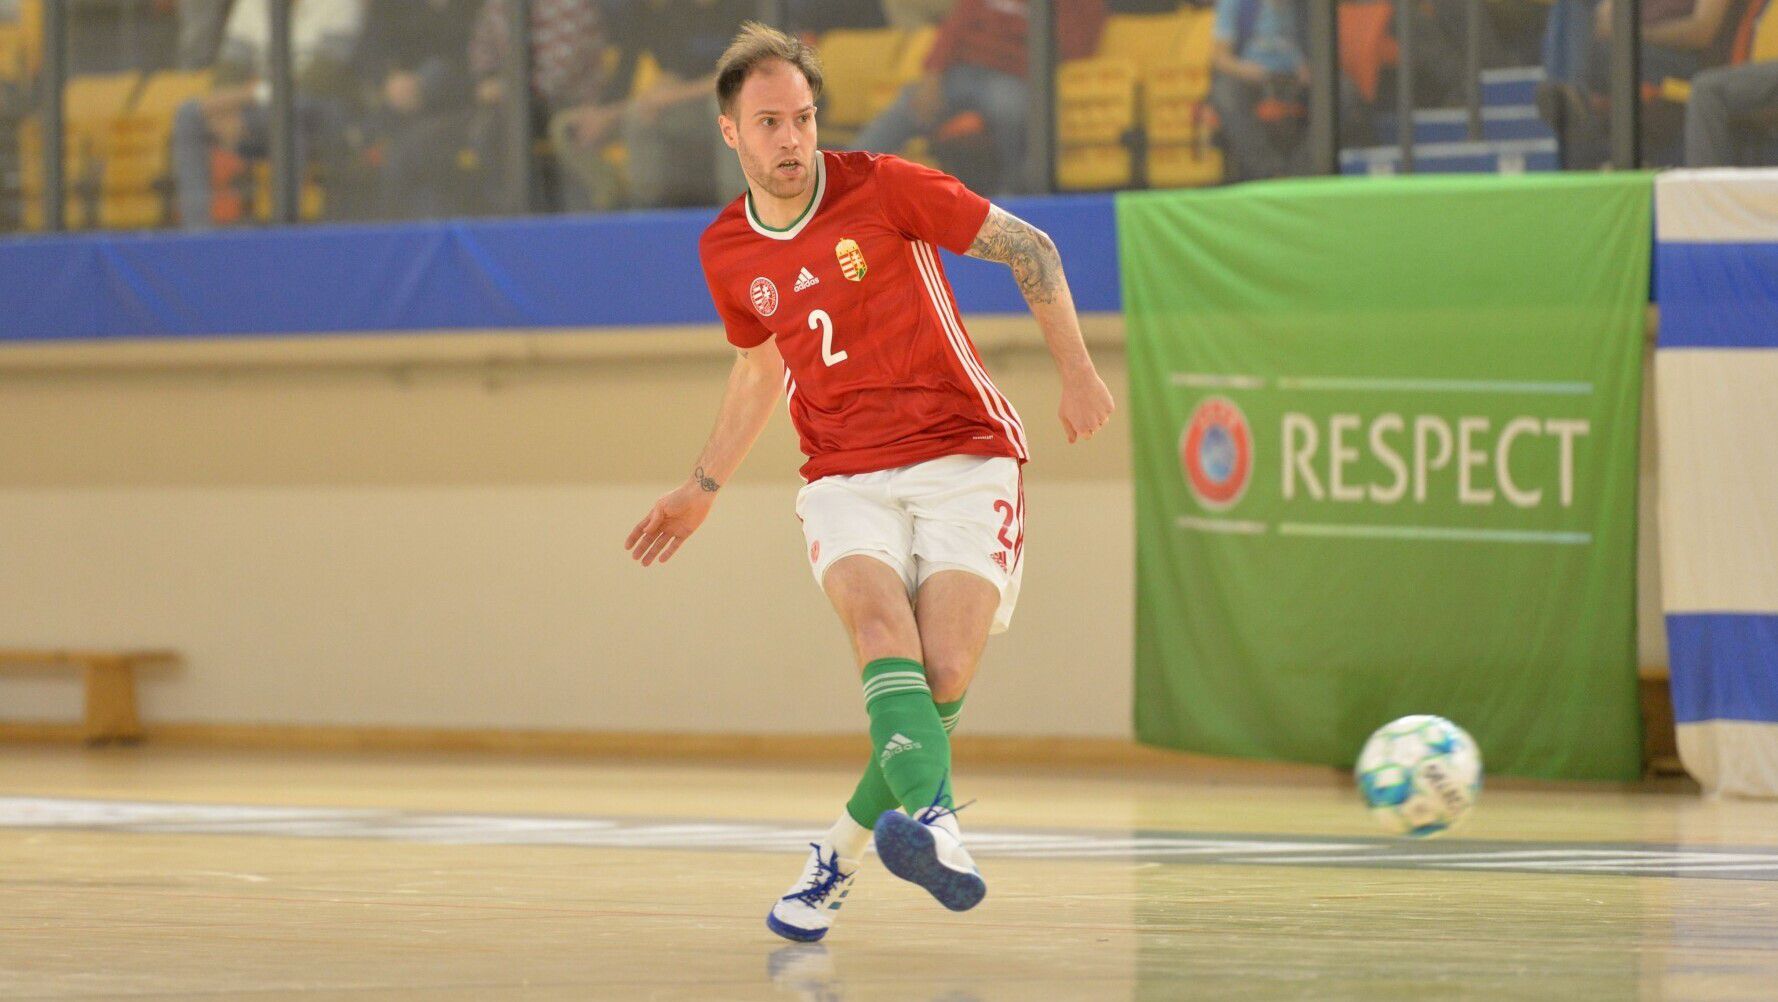 Dávid Richárd Izrael ellen két gólt szerzett, és Horvátország legyőzését sem tartja lehetetlennek. (Fotó: mlsz.hu)